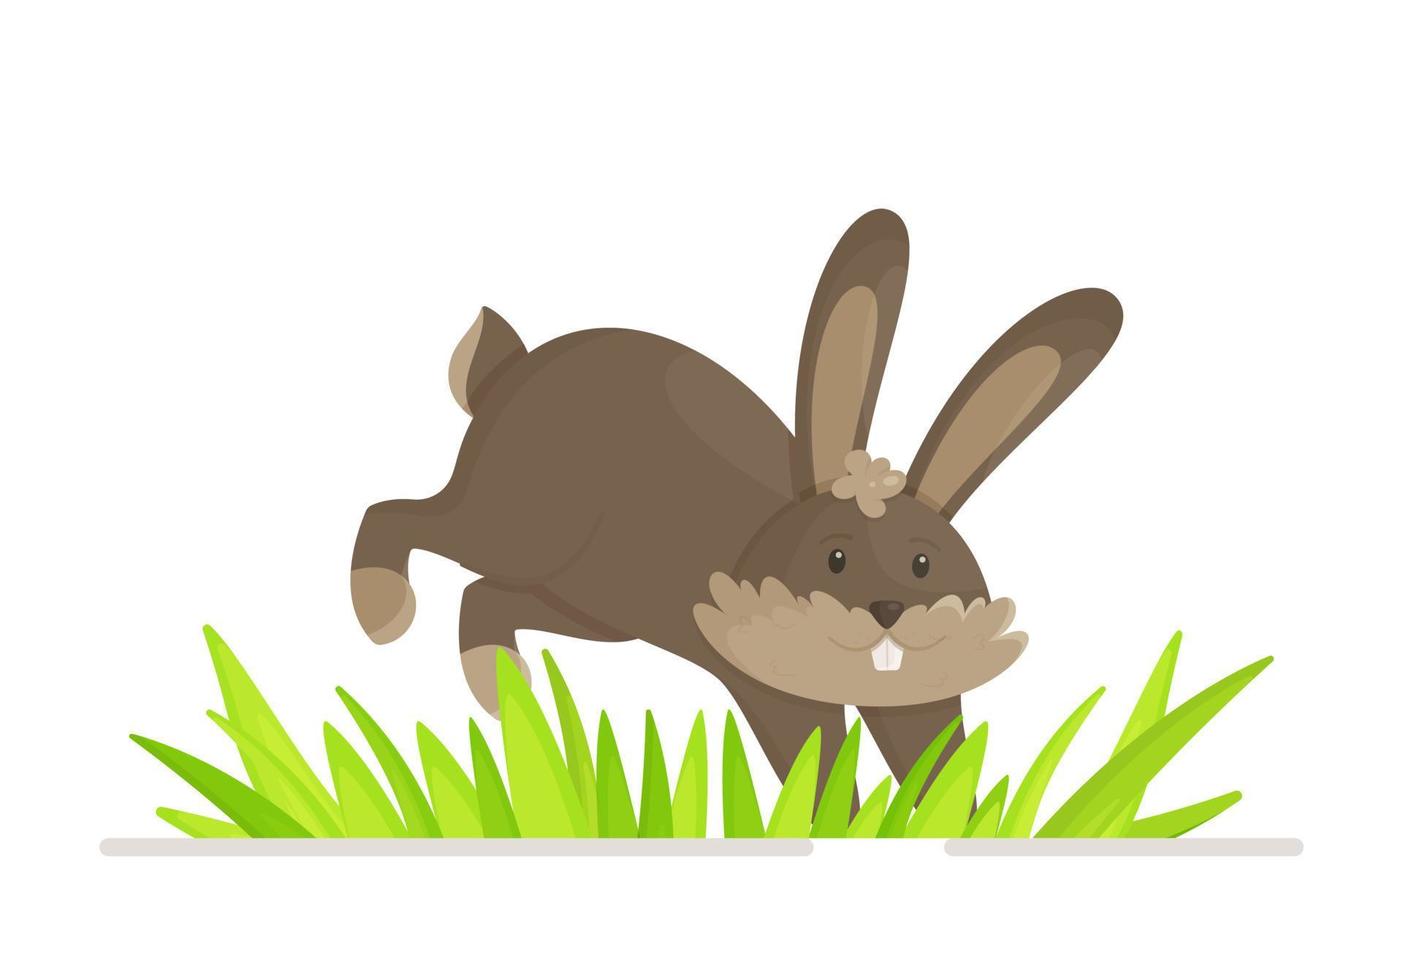 um coelho cinza pulando na grama. ilustração em vetor de um coelhinho fofo pulando. fofo, gentil, fofo, inofensivo.